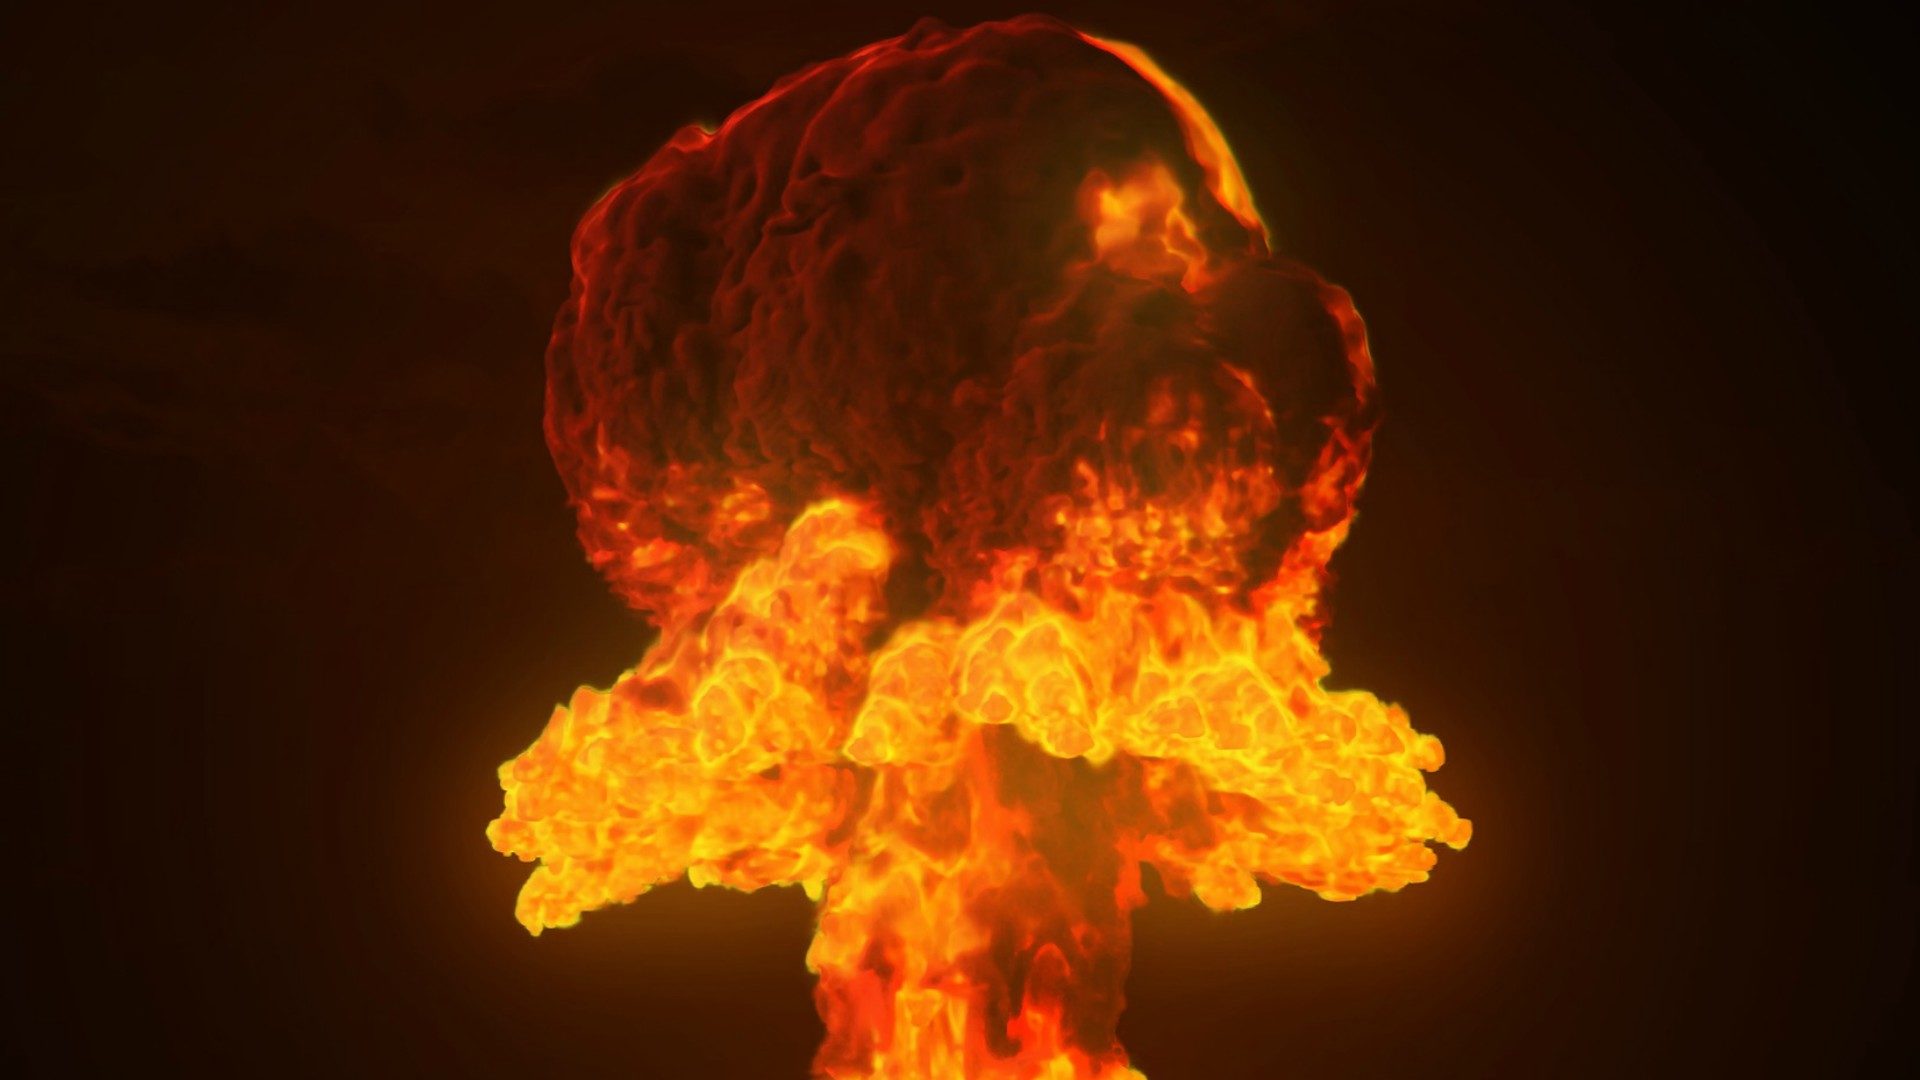 Pour le pape, les armes nucléaires font craindre un "suicide de l'humanité" (Photo: Pixabay.com)